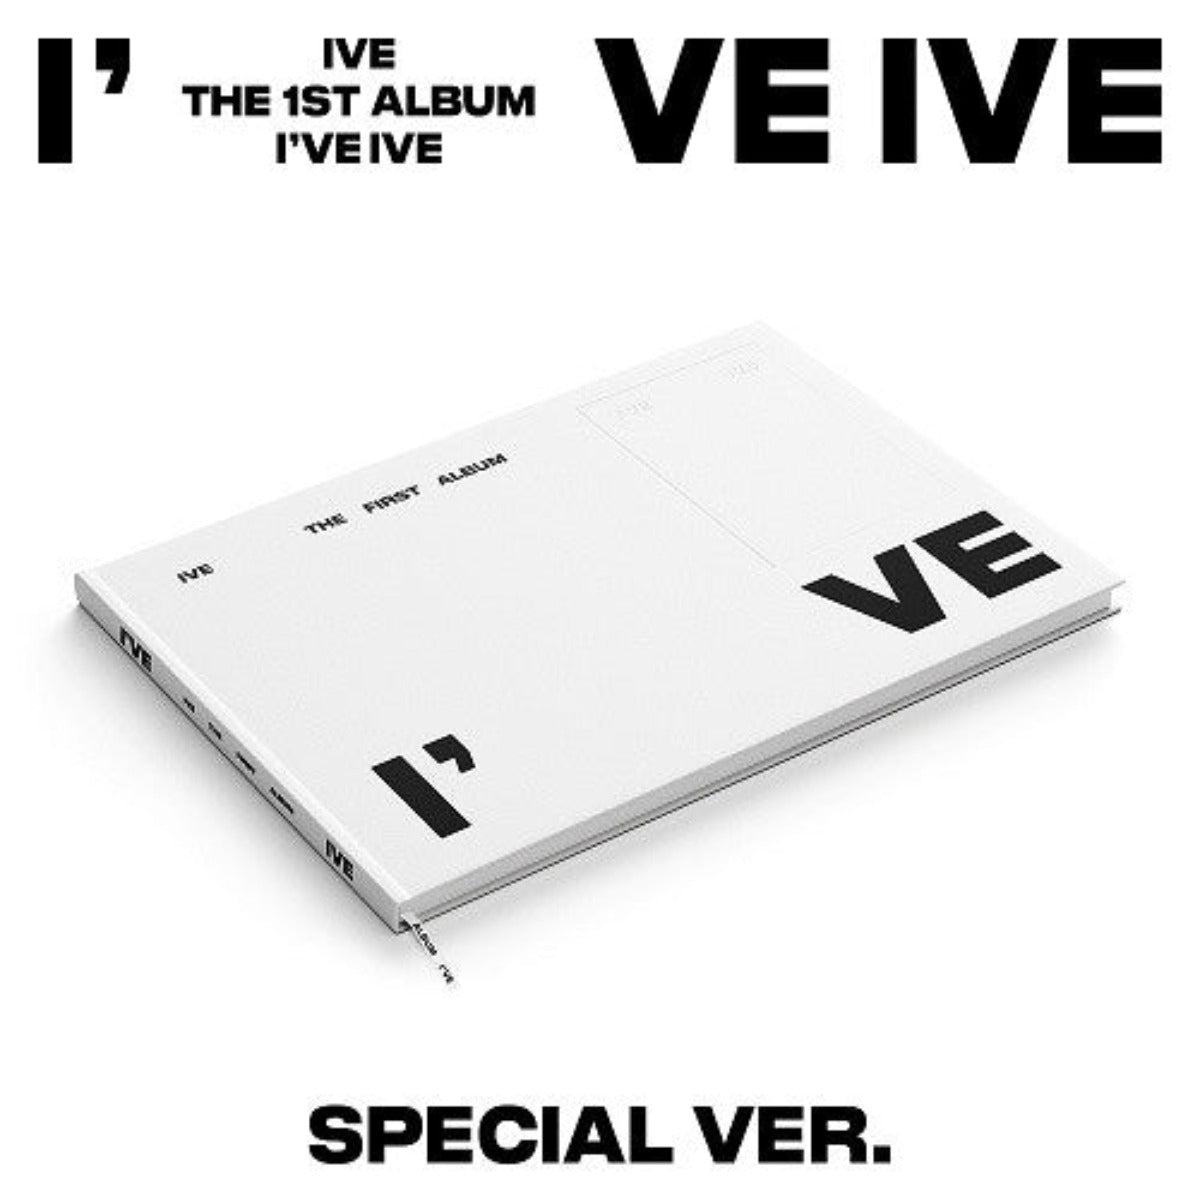 IVE Vol. 1 - I've IVE (Special Version)